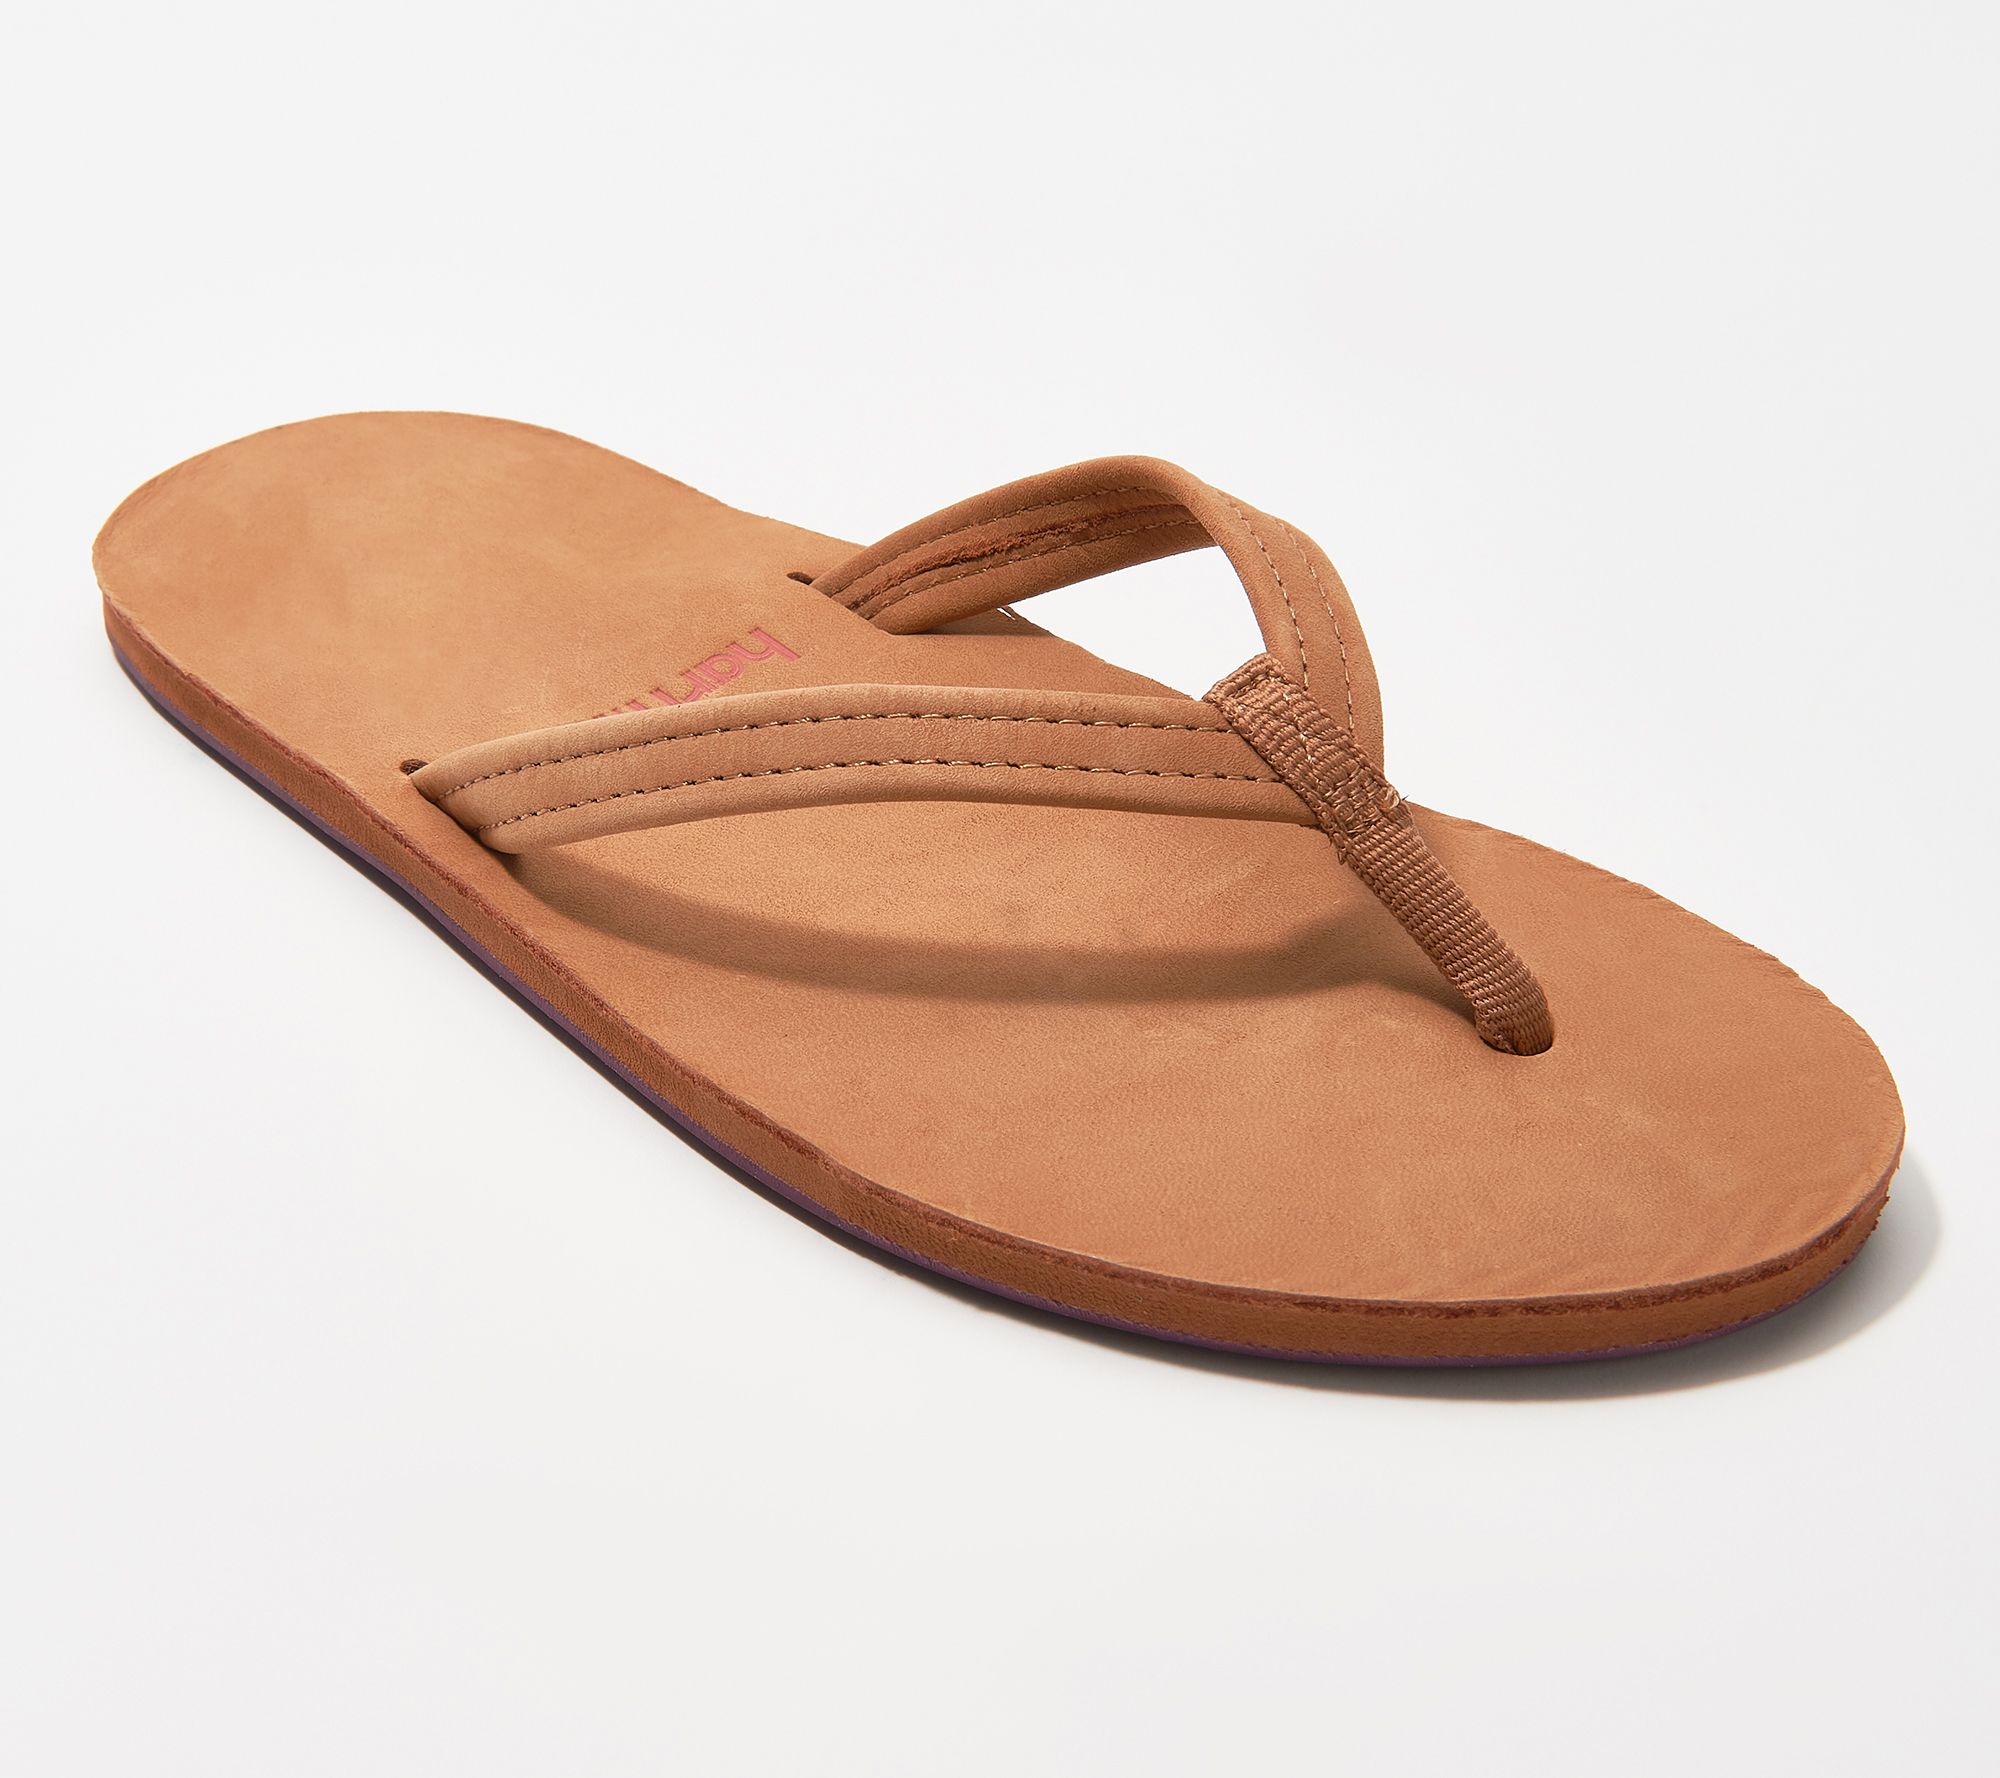 Hari Mari Nubuck Leather Thong Sandals - Fields - QVC.com